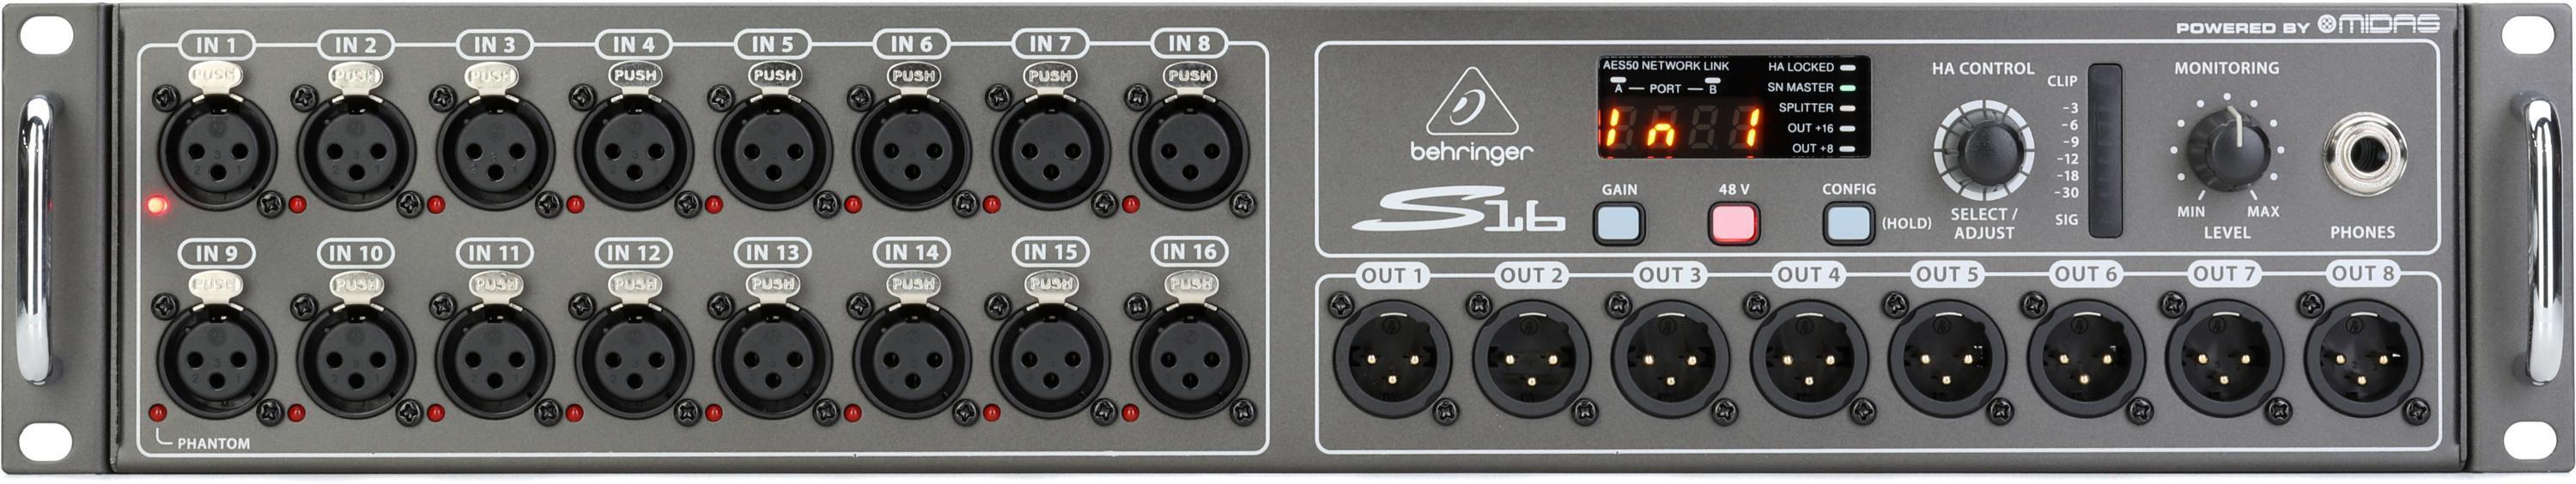 Bundled Item: Behringer S16 16-input / 8-output Digital Stage Box